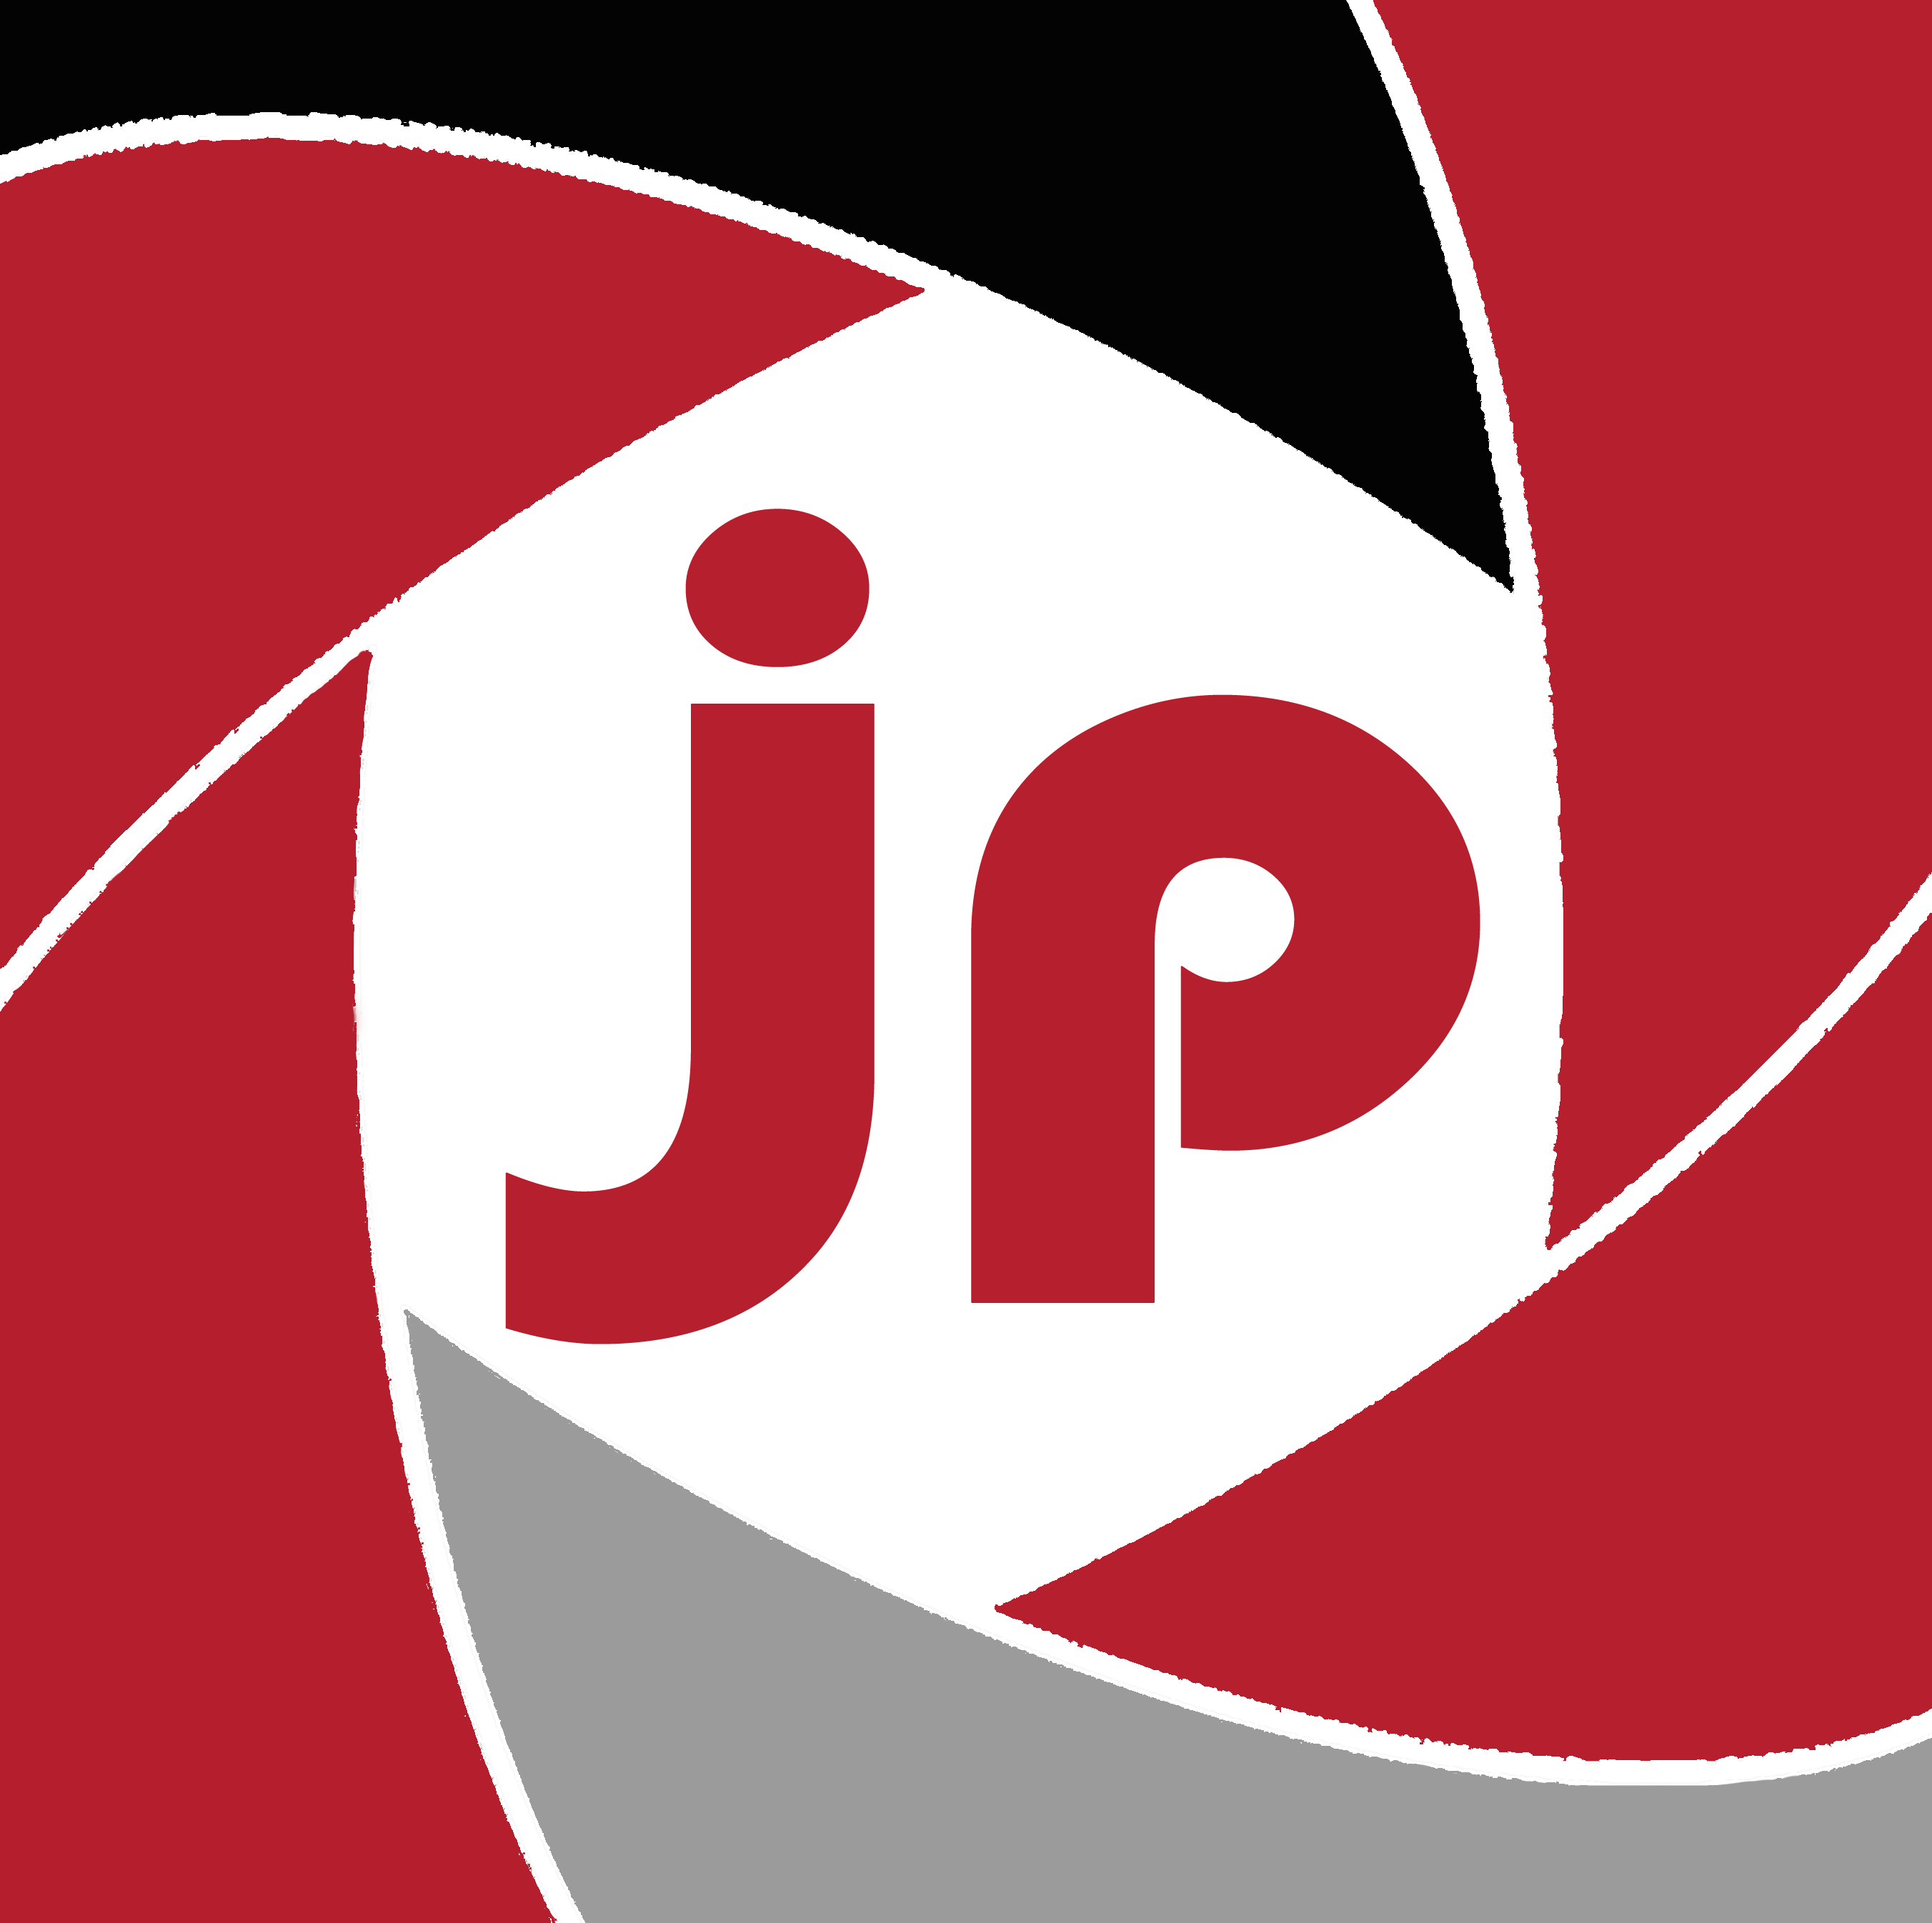 (c) Jupics.net